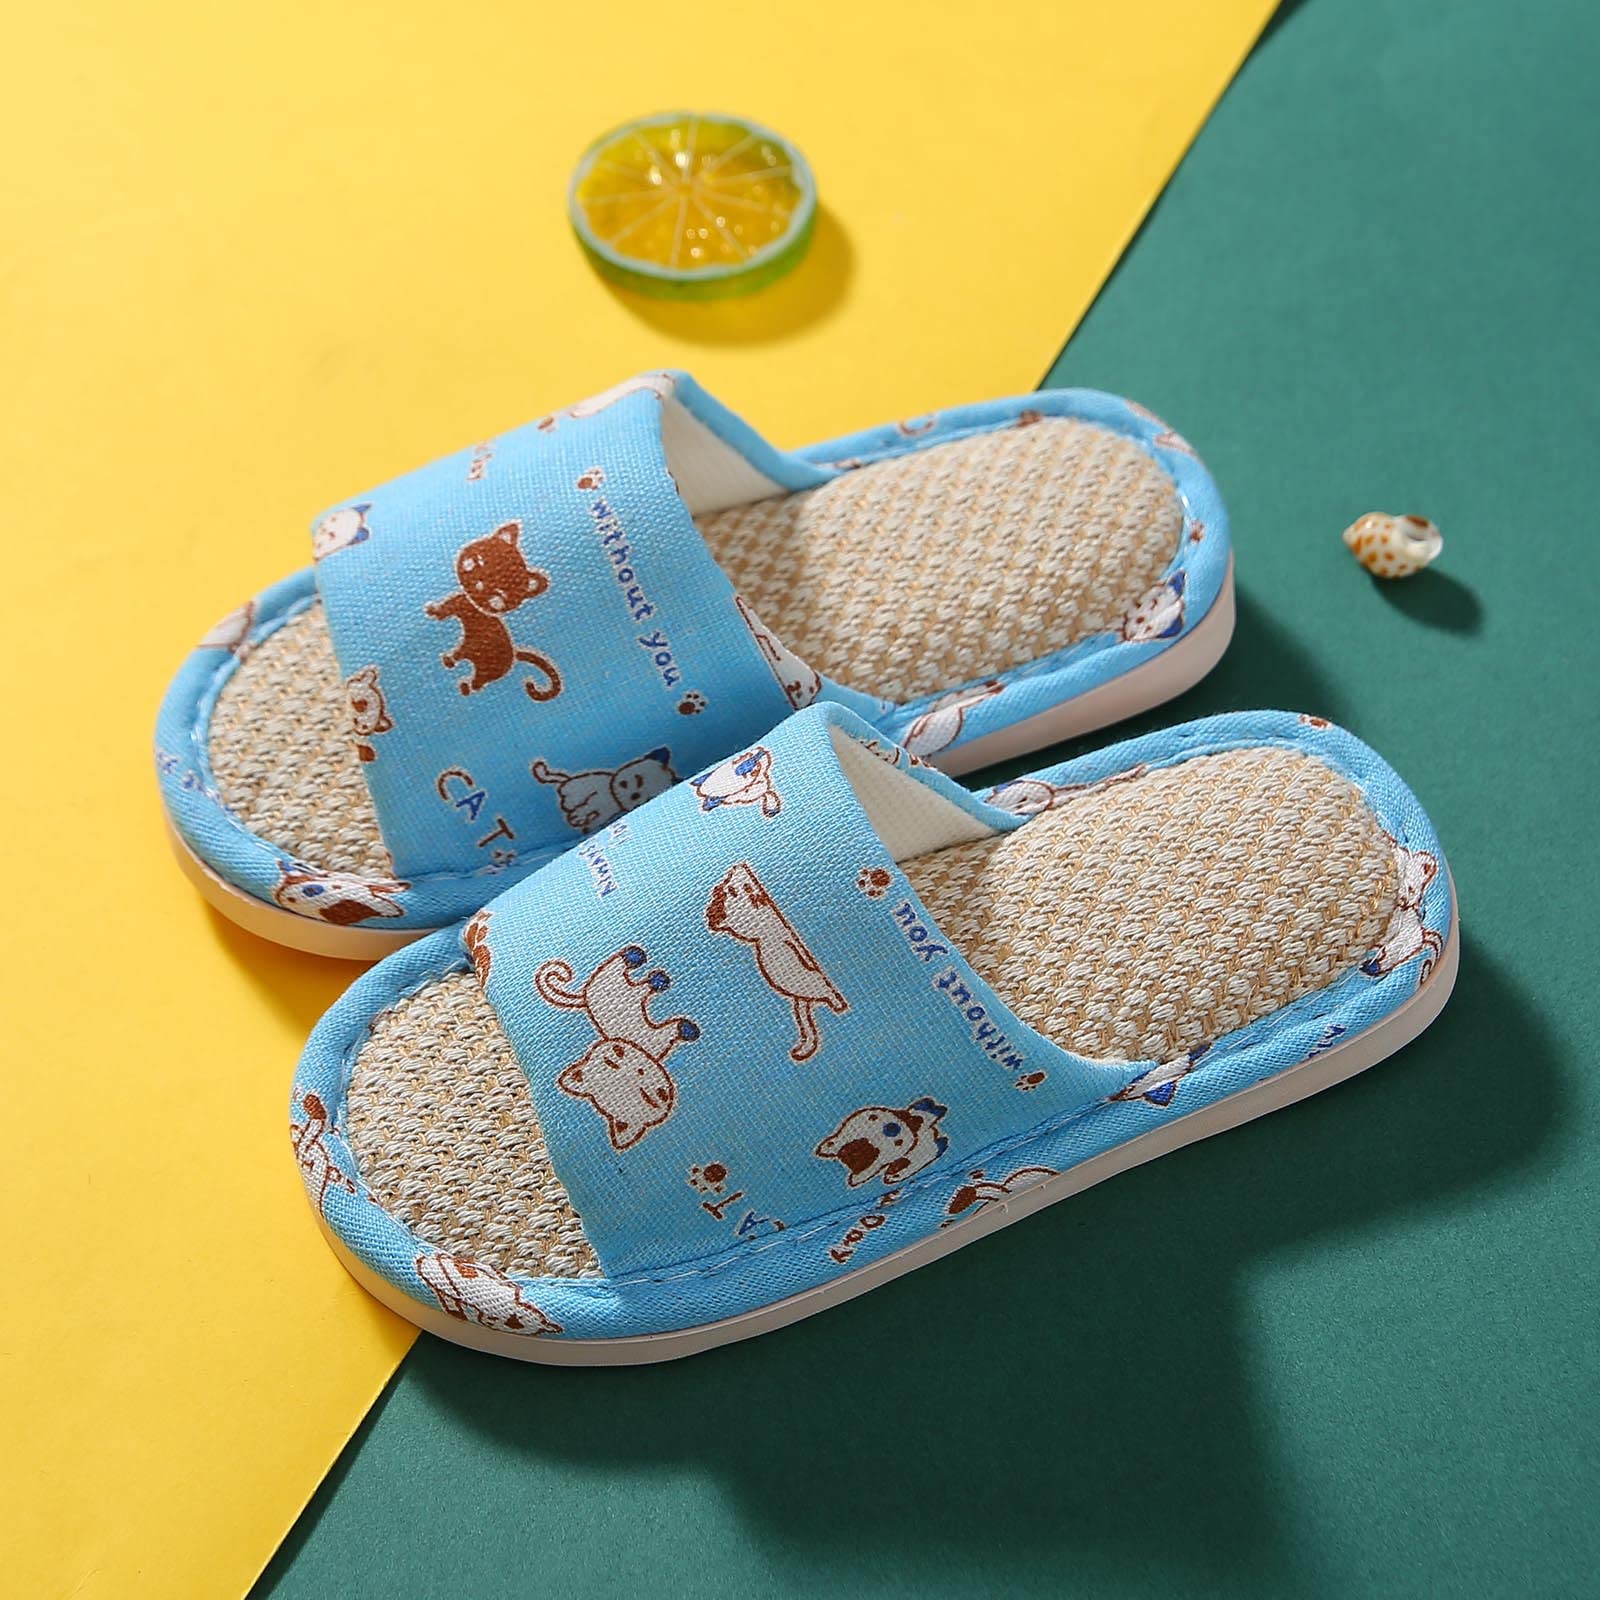 Toddler Bedroom Slipper Toddler House Slippers For Boys Open Toe Cotton Linen Girls Slippers Size 9 Toddler